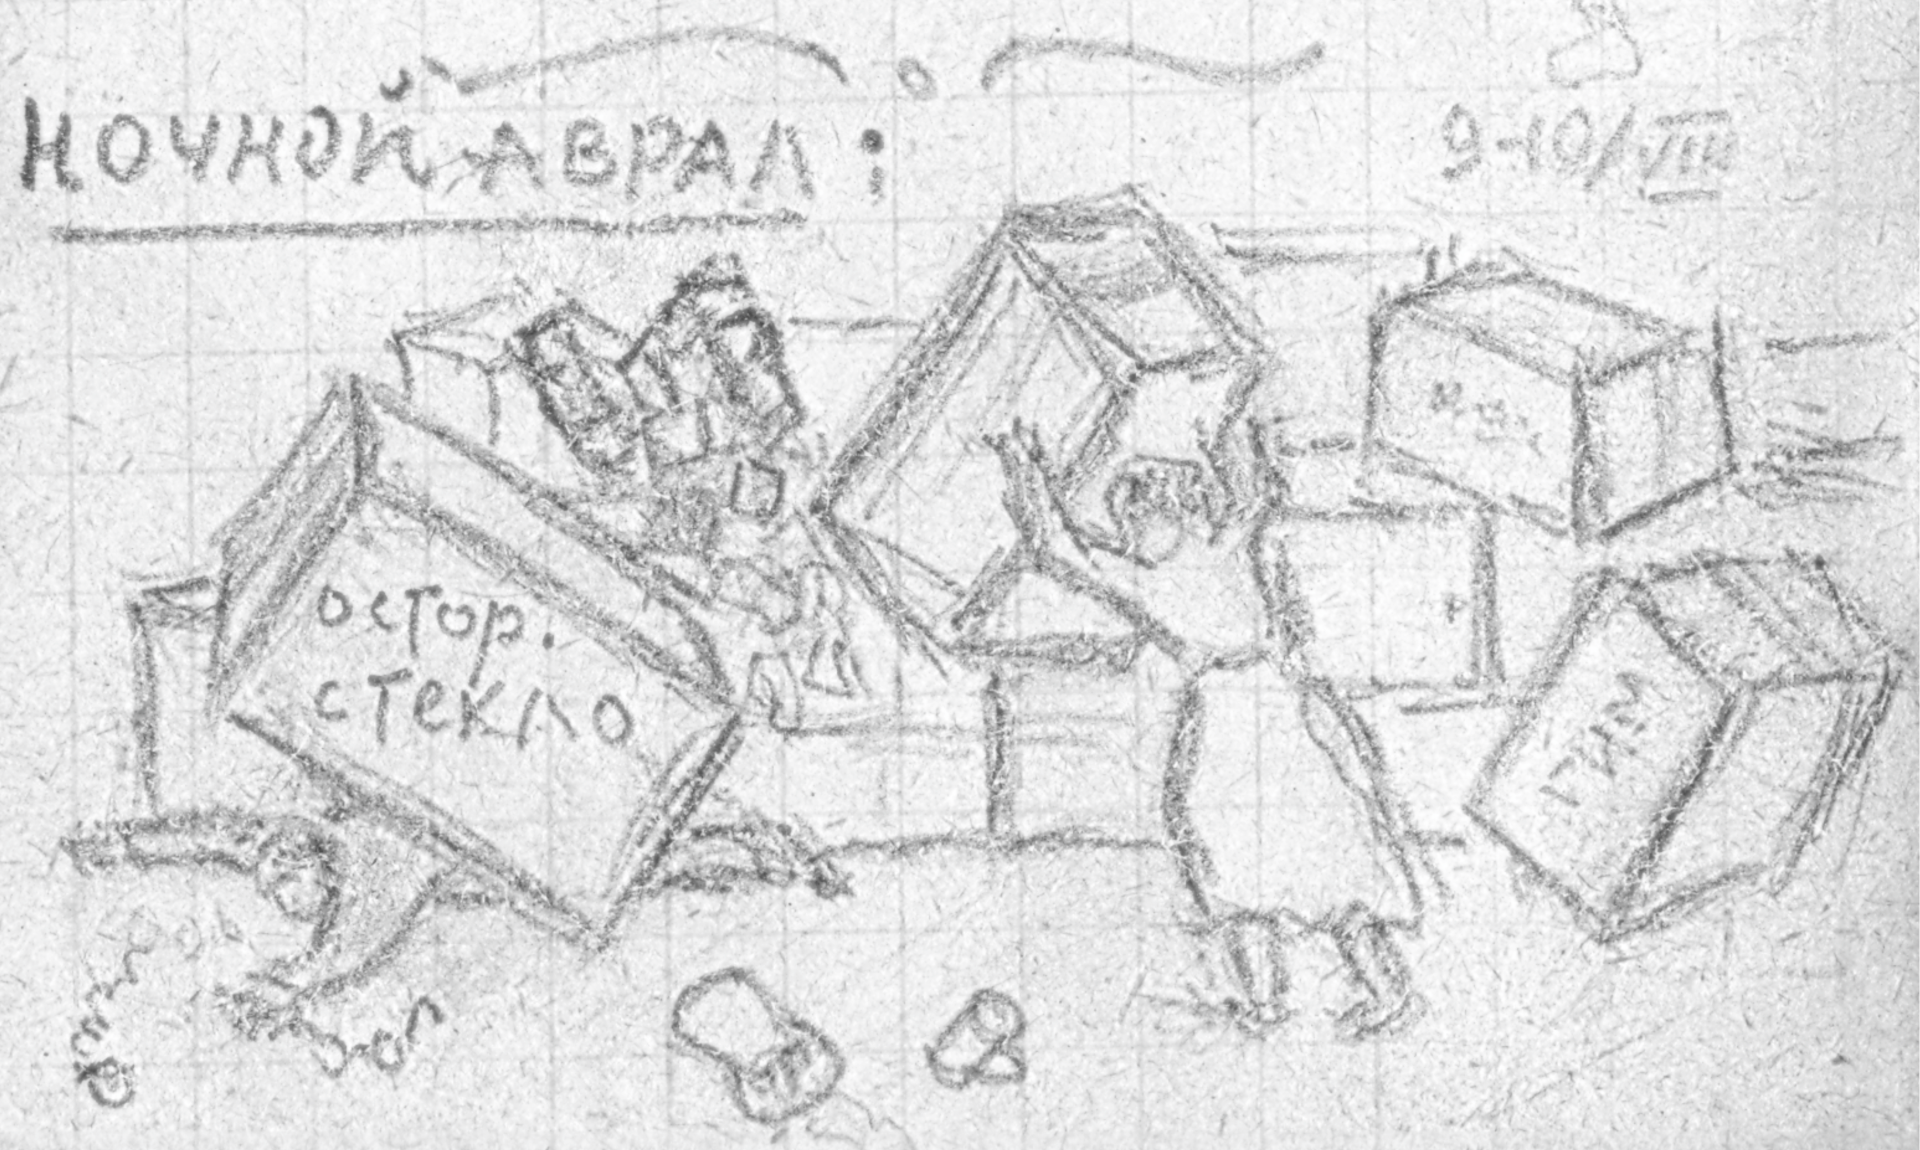 Охрана коллекций в Челябинске. Рисунок из записной книжки Н.Р. Левинсона. 1942 г.